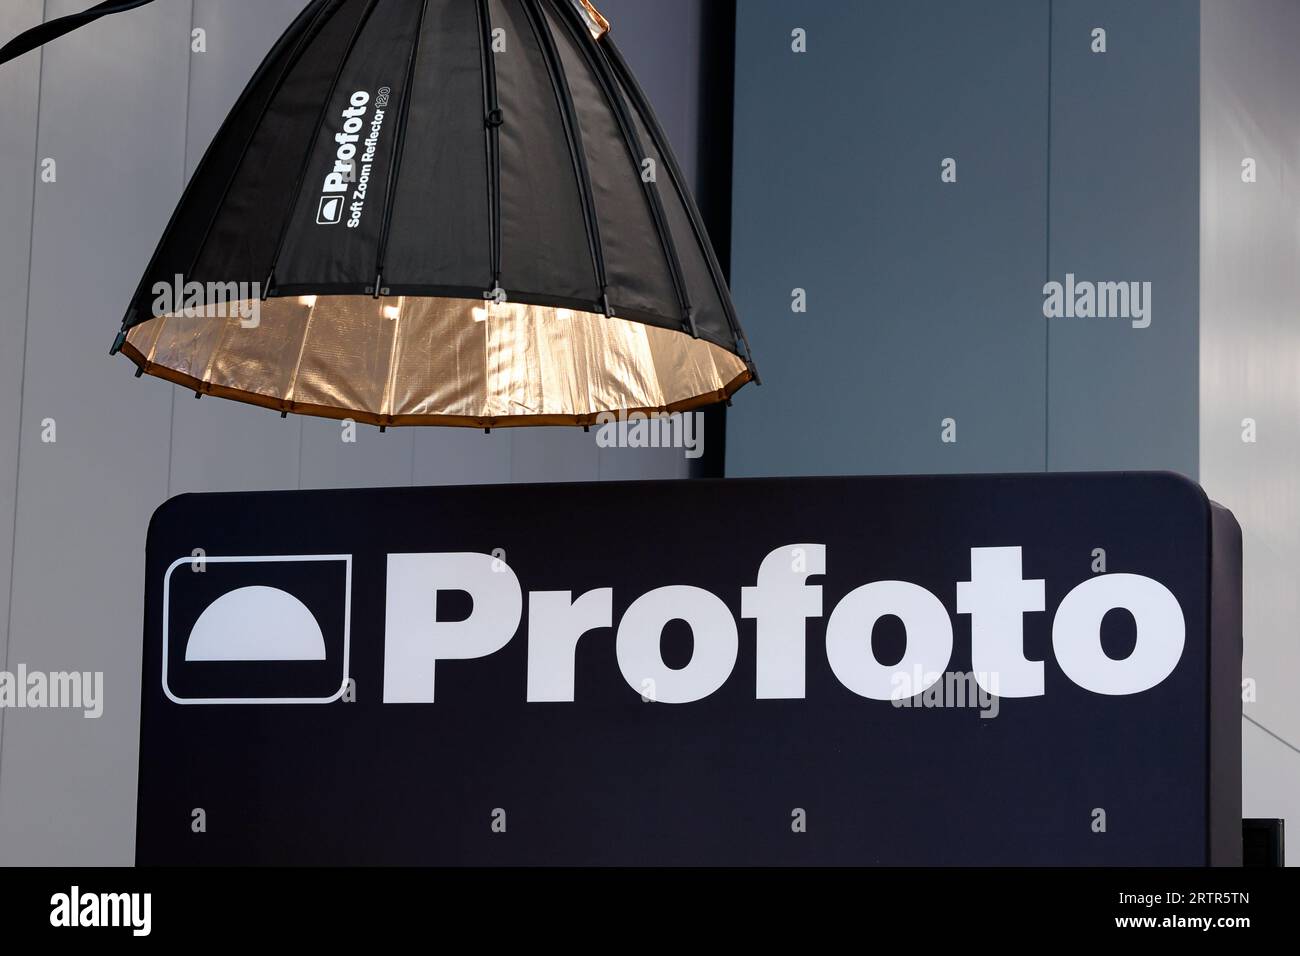 Signalisation pour l'équipement d'éclairage de studio photographique ProPhoto lors d'un salon professionnel, exposition. Banque D'Images